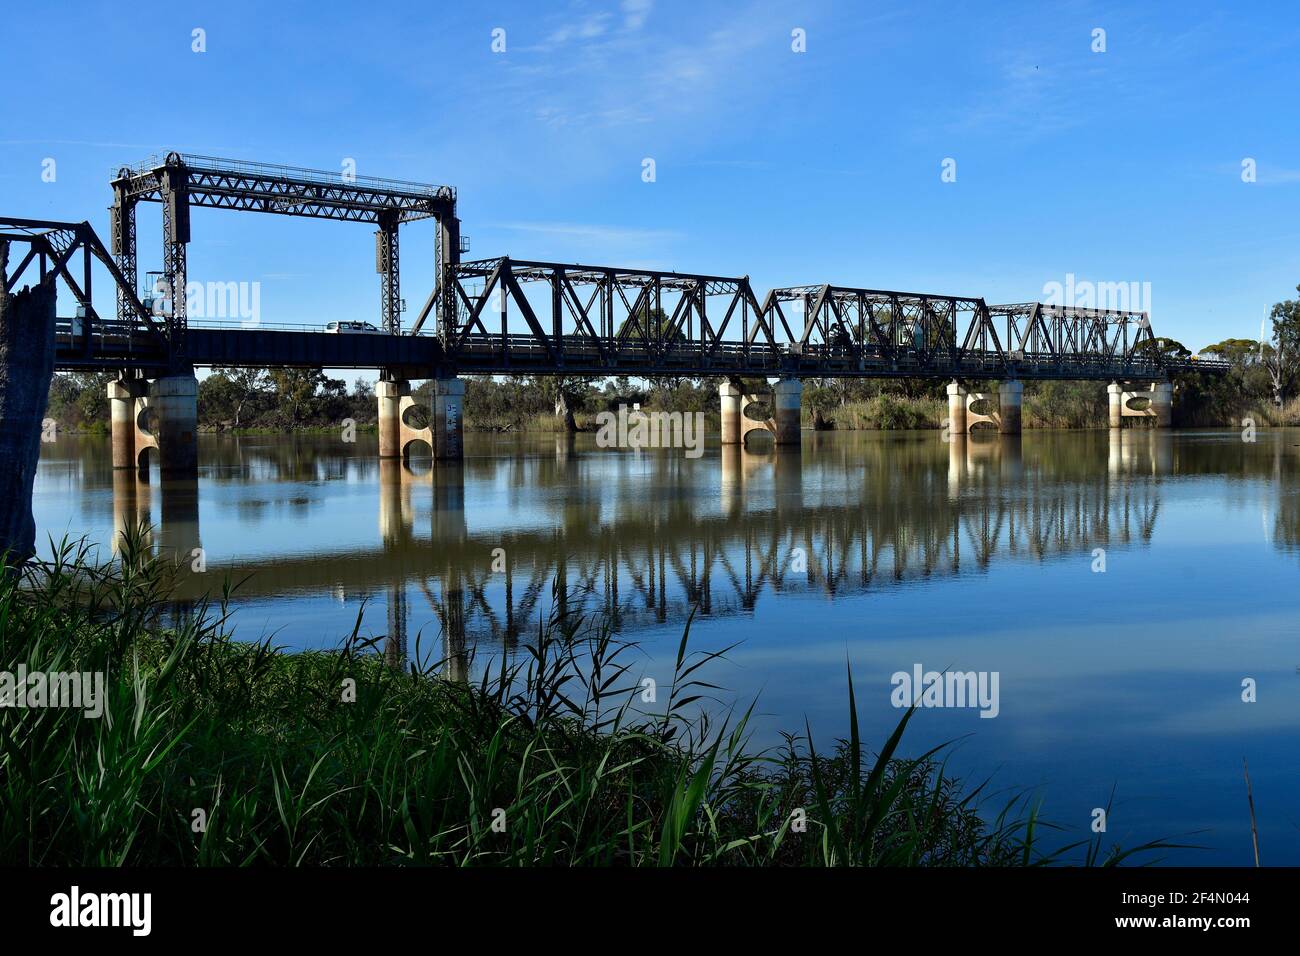 L'Australie, NSW, Abbotsford pont sur le fleuve Murray, une seule voie Pont en treillis en acier Banque D'Images